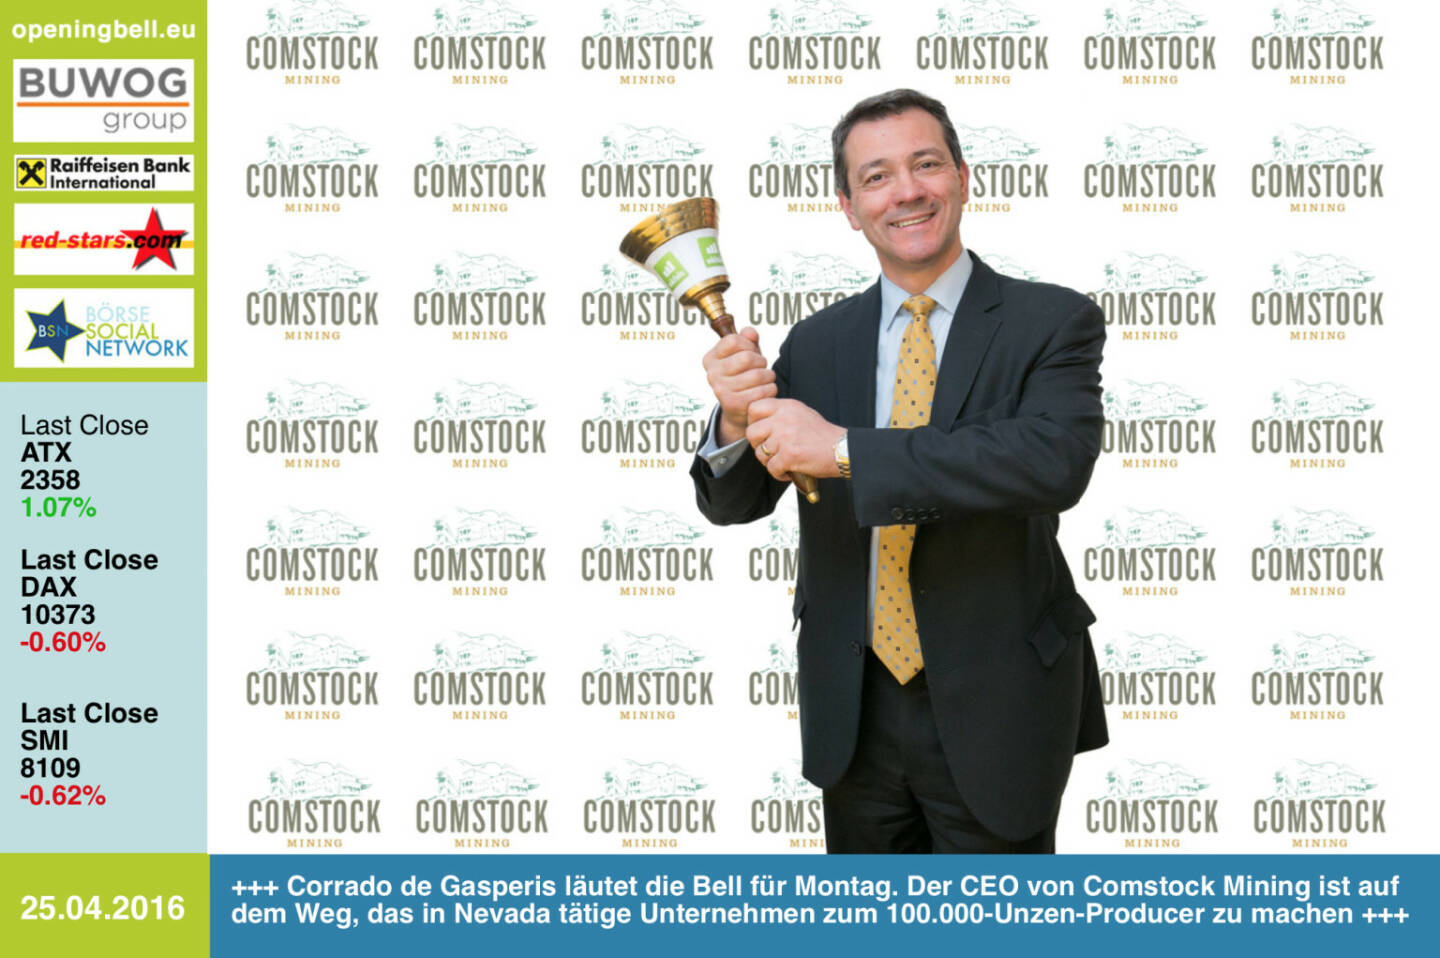 #openingbell am 25.4.: Corrado de Gasperis läutet die Opening Bell für Montag. Der CEO von Comstock Mining ist auf dem Weg, das in Nevada tätige Unternehmen zum 100.000-Unzen-Producer zu machen http://comstockmining.com http://www.openingbell.eu